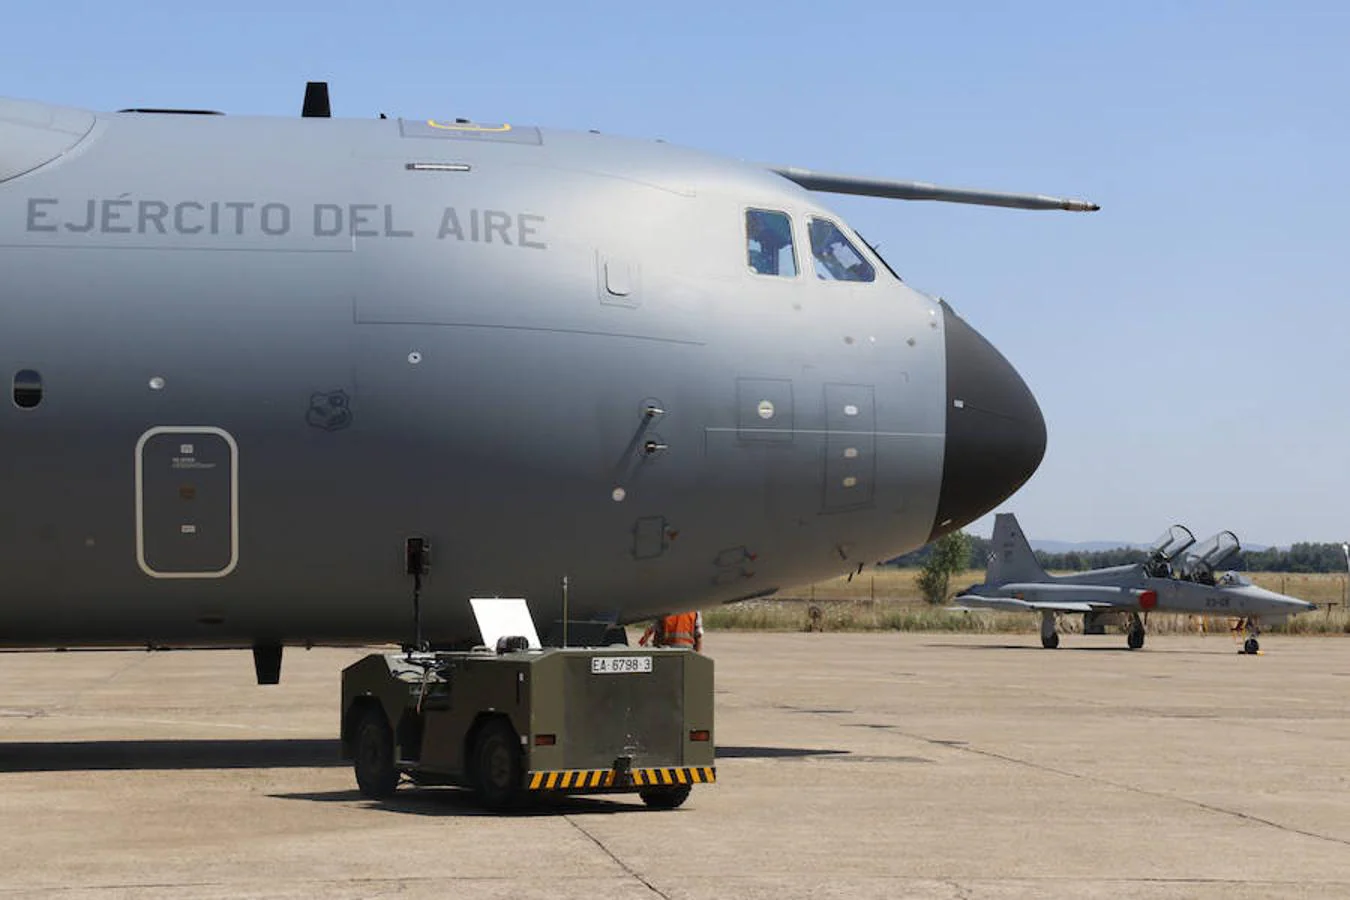 El nuevo avión militar Airbus A400M ha aterrizado este lunes en la Base Aérea de la localidad pacense de Talavera la Real, durante un vuelo de instrucción.Un aterrizaje que se ha producido este lunes siguiendo el Plan de Implantación de este avión en el Ejército del Aire, y que supone la primera vez que se recibe en Extremadura un avión militar de estas características, según informa la base aérea.